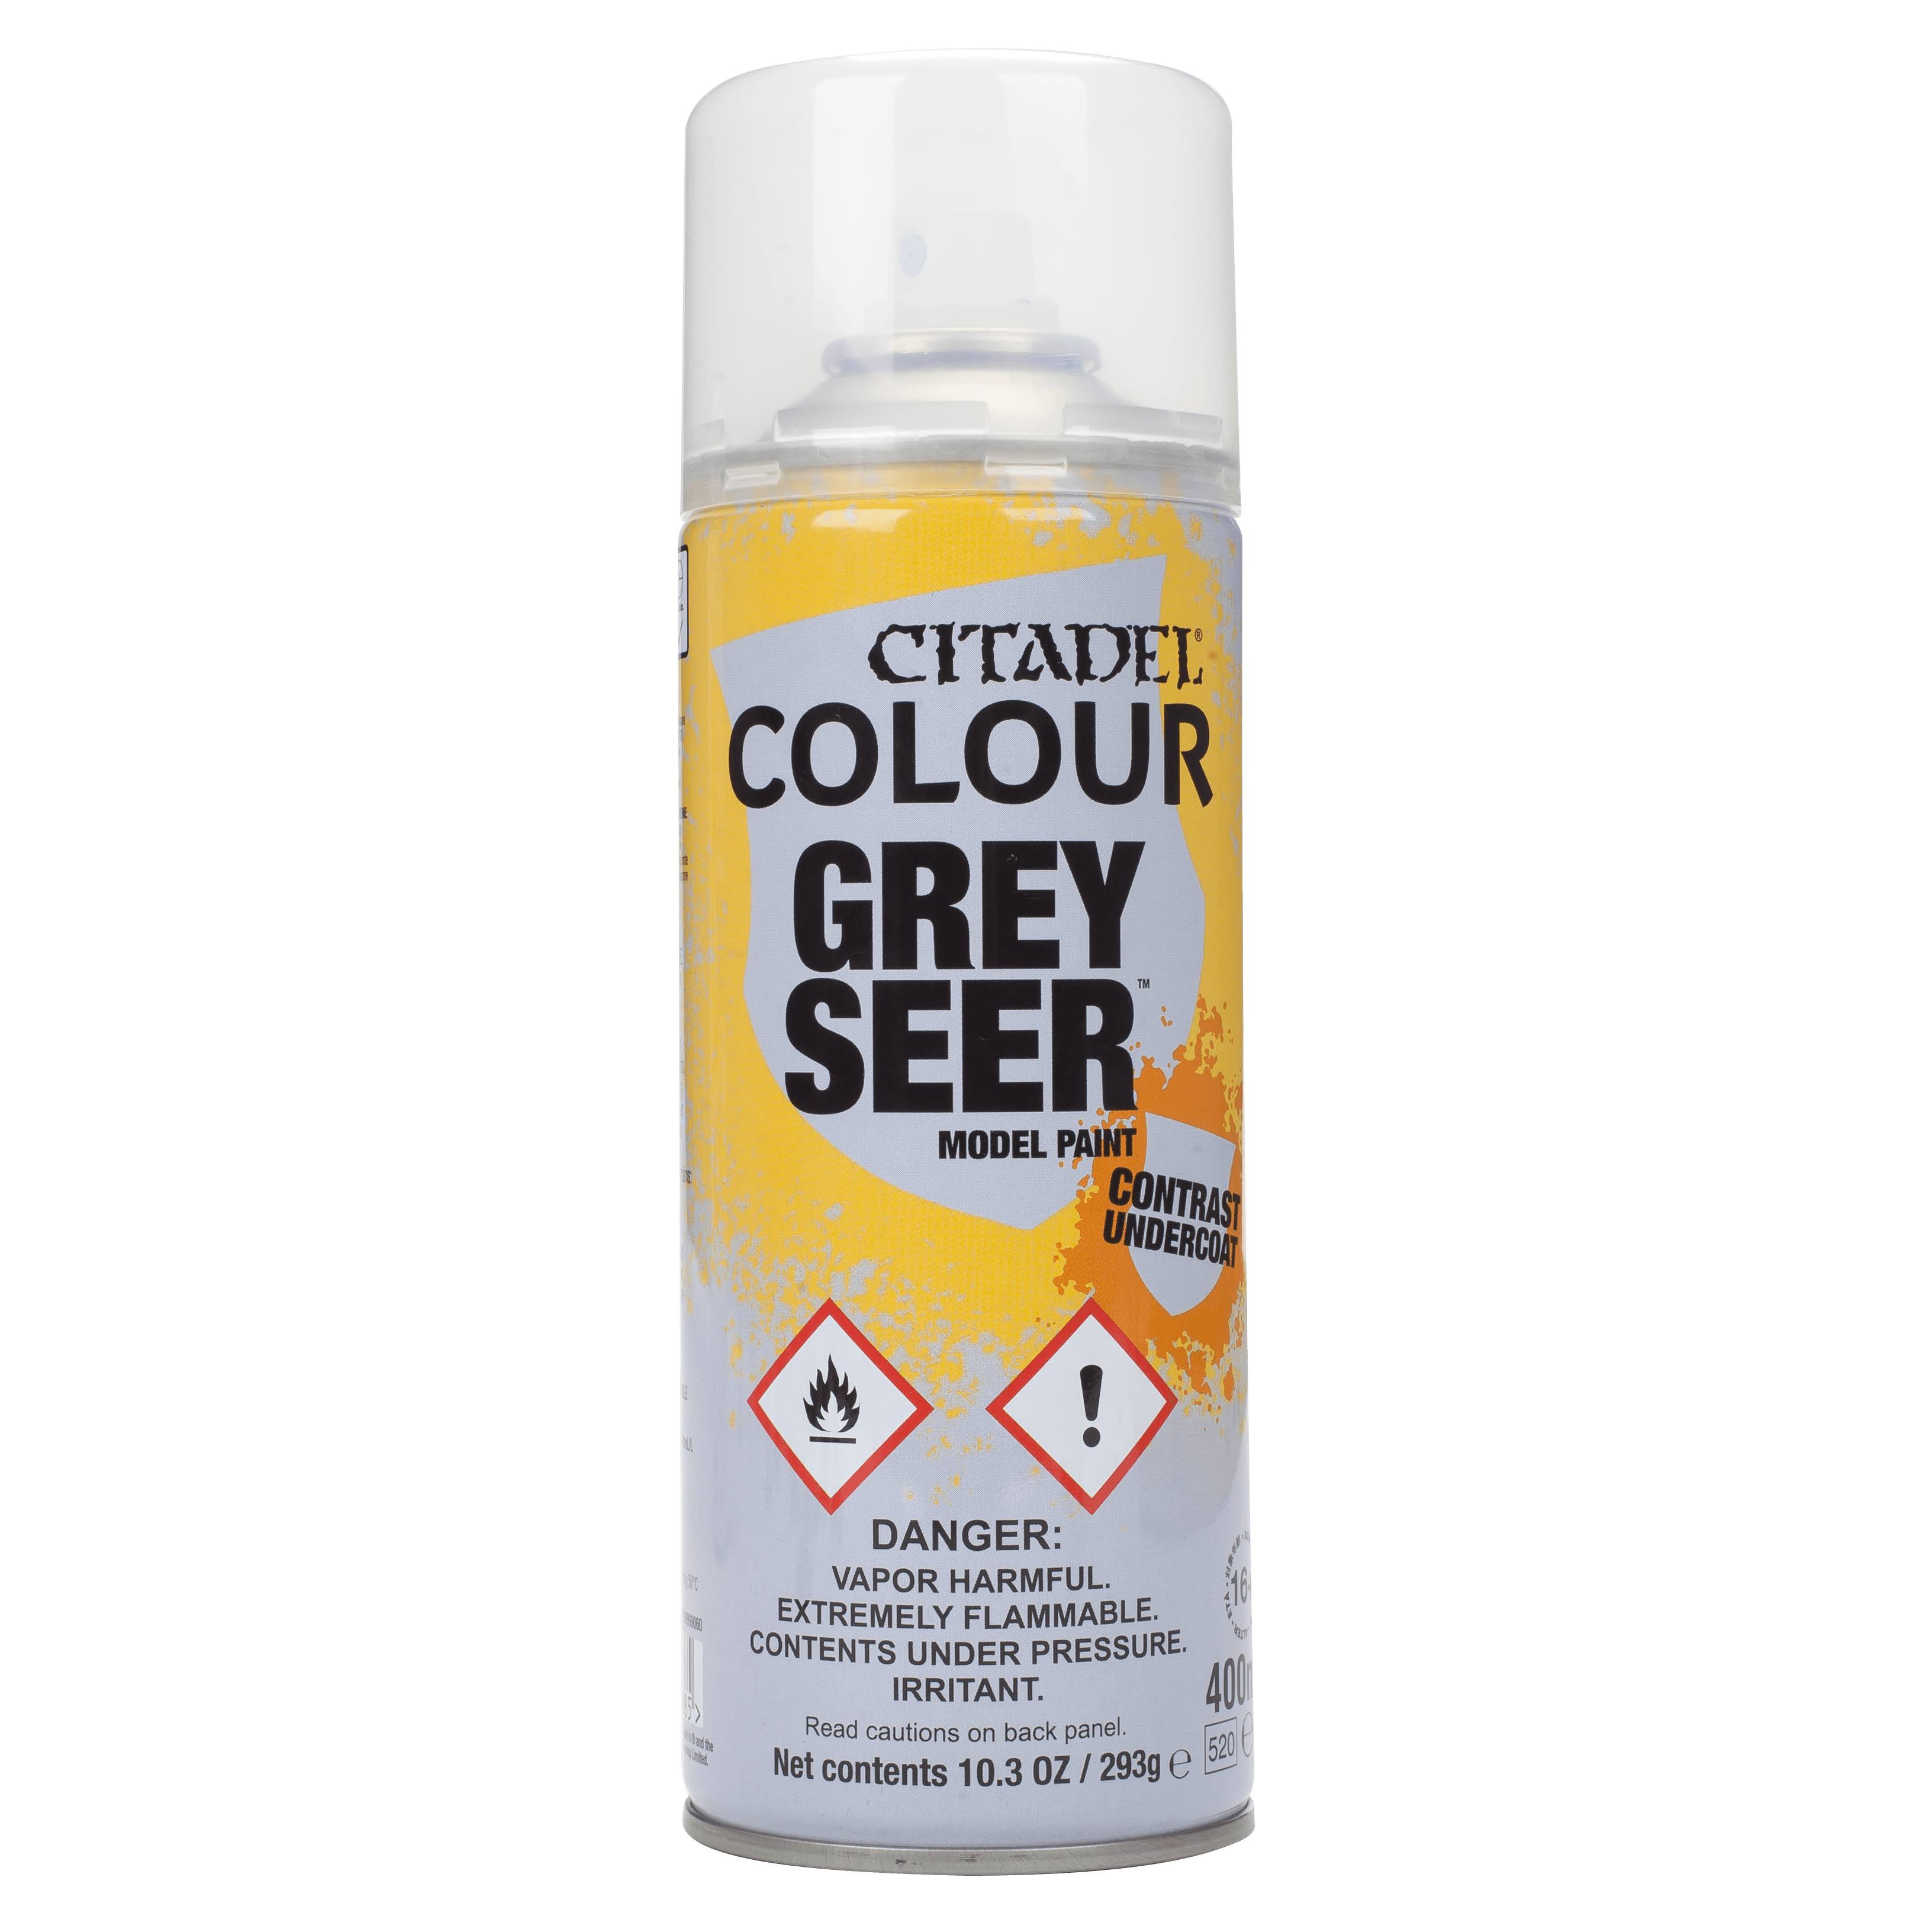 Citadel Grey Seer Spray 400ml